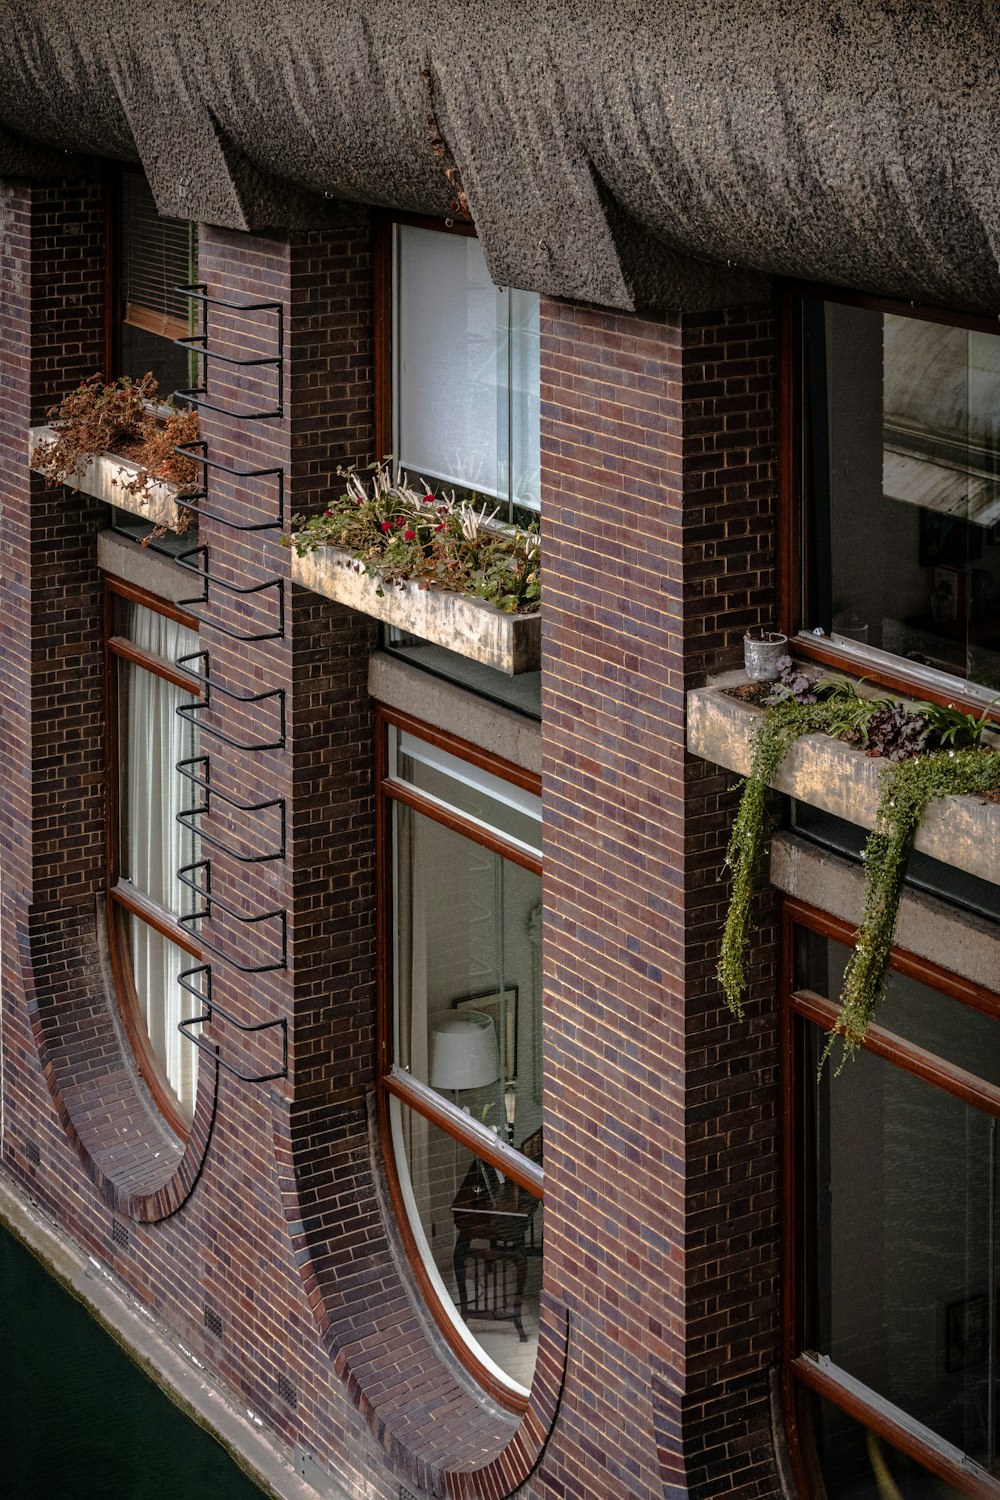 창문에 식물이있는 벽돌 건물